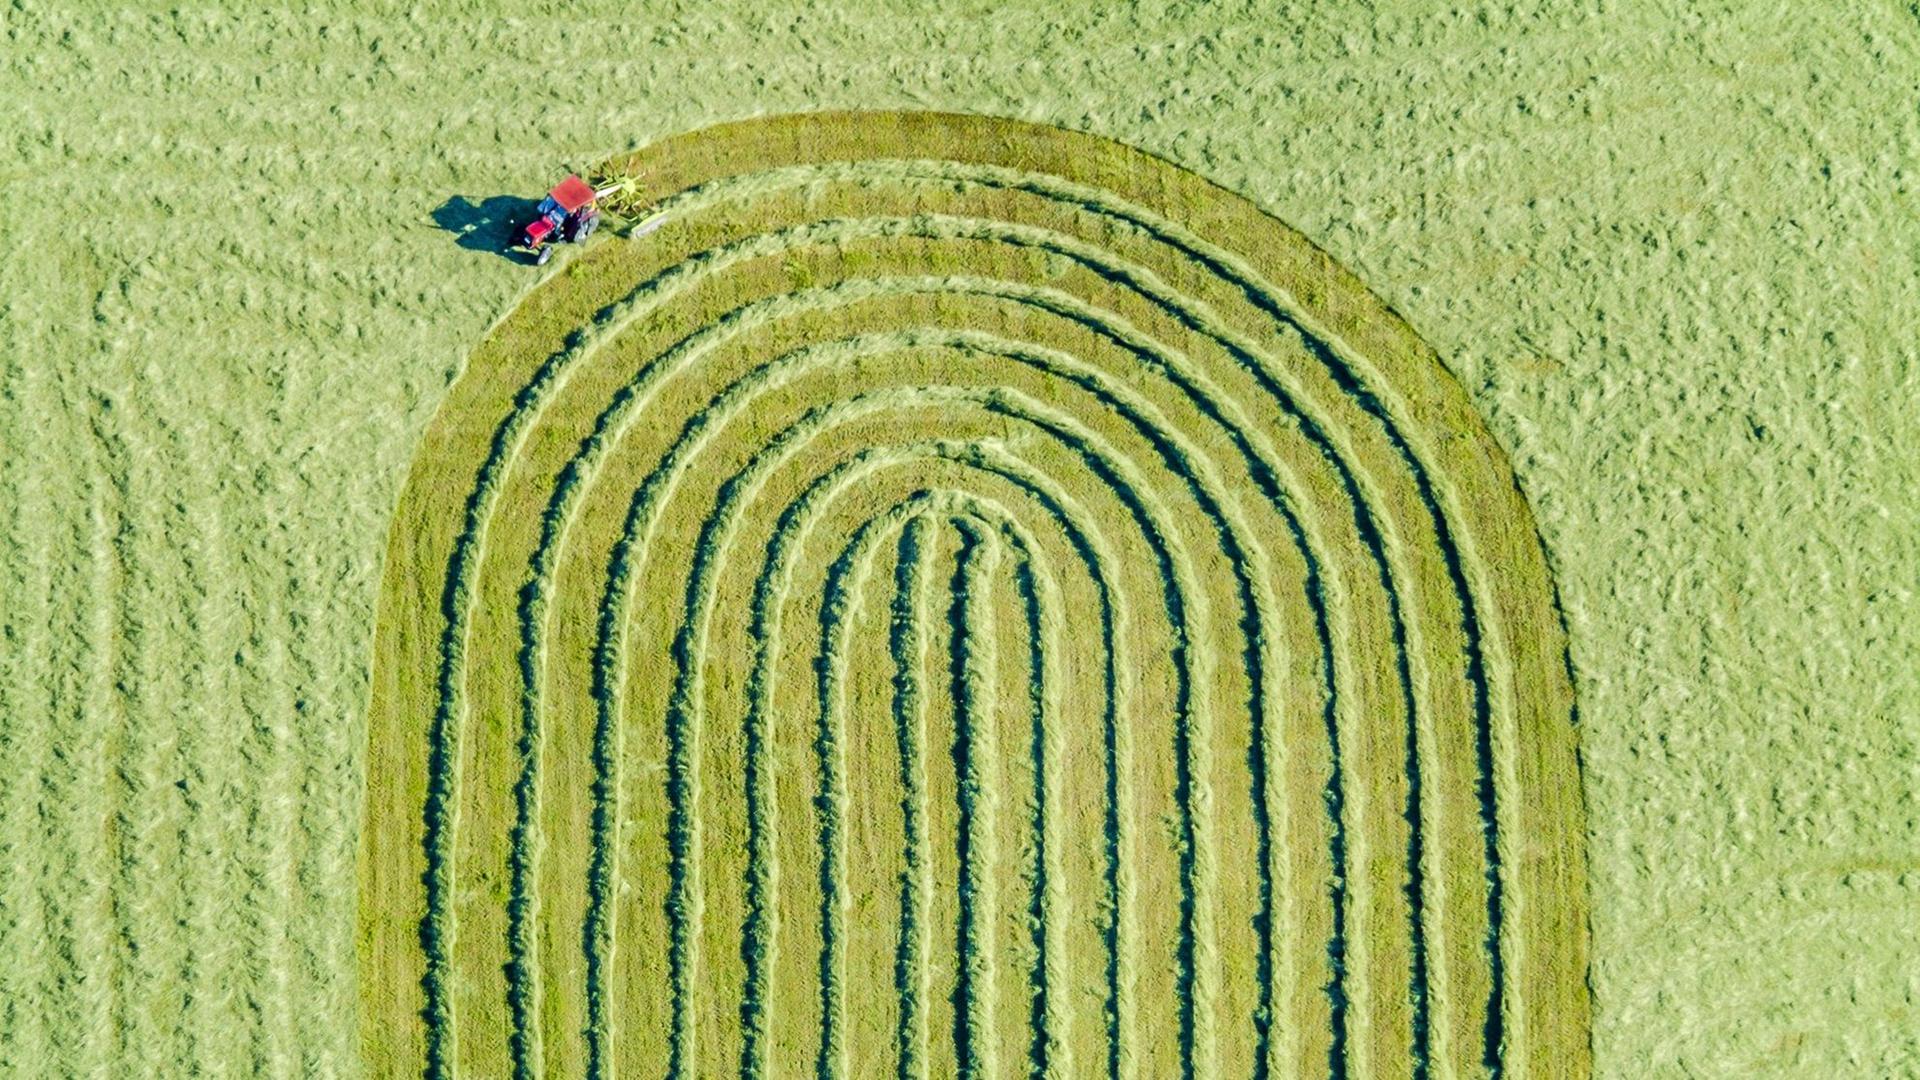 Luftbild von einem roten Traktor, der gerade auf einer gemähten Wiese das Gras zusammenrecht